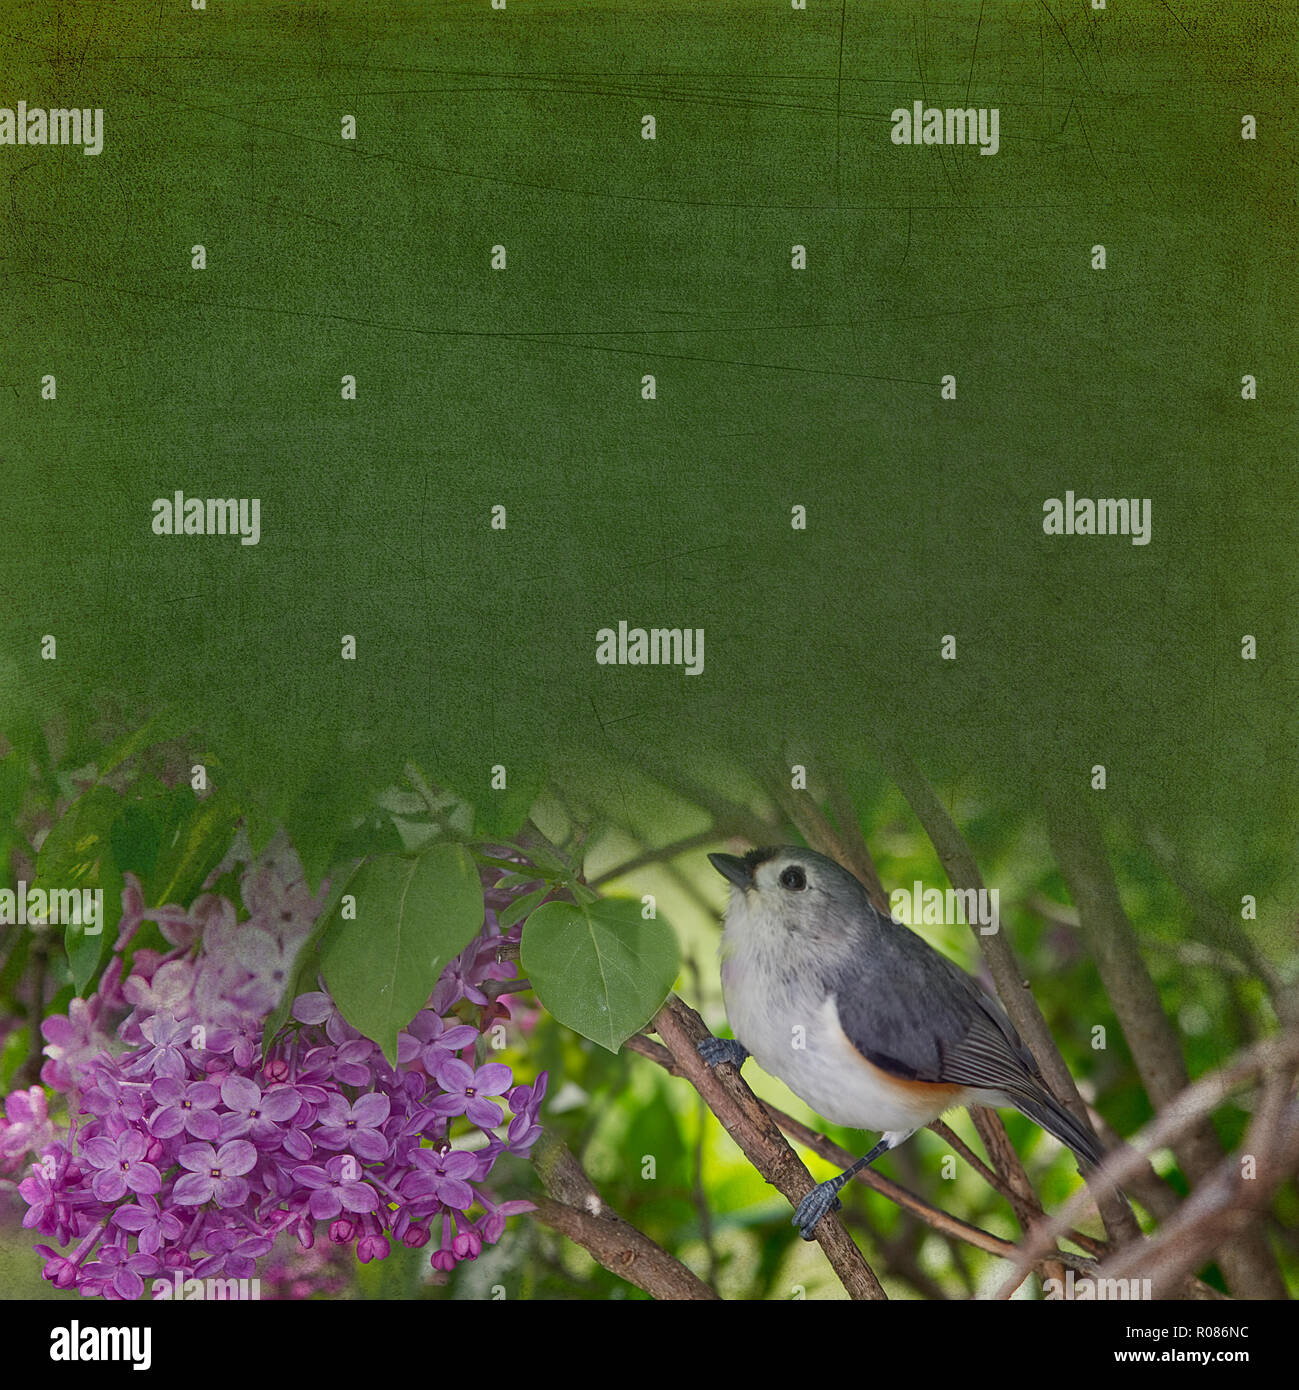 Grigio junco bird arroccato sui rami in giardino. Lo sfondo dell'illustrazione con area di testo. Foto Stock